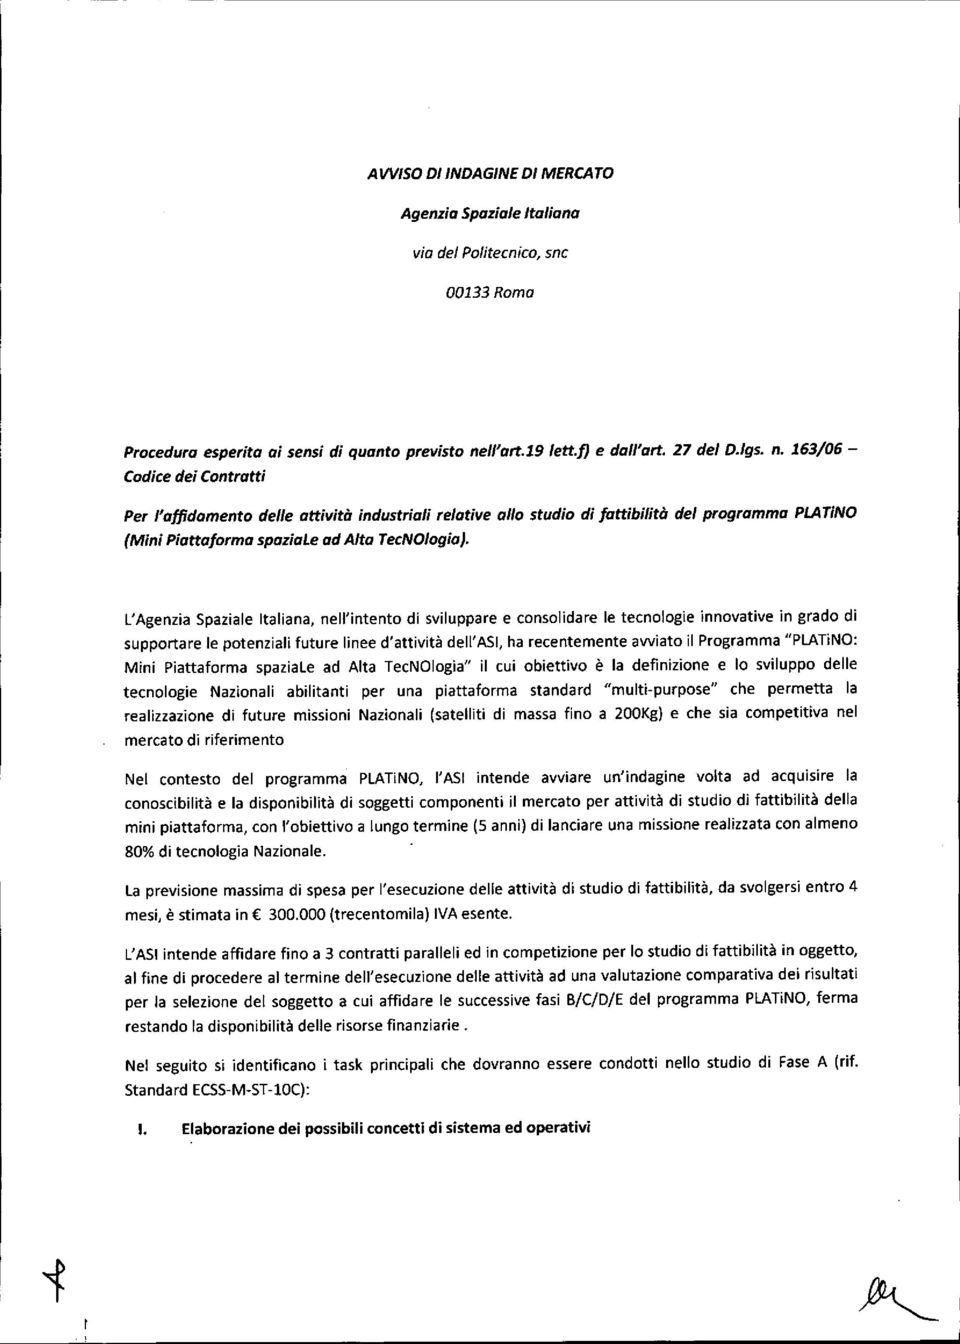 163/06 - Codice dei Contratti Per l'affidamento delle attività industriali relative allo studio di fattibilità del programma PLATiNO (Mini Piatta/arma spoziale ad Alta TecNOlogia).